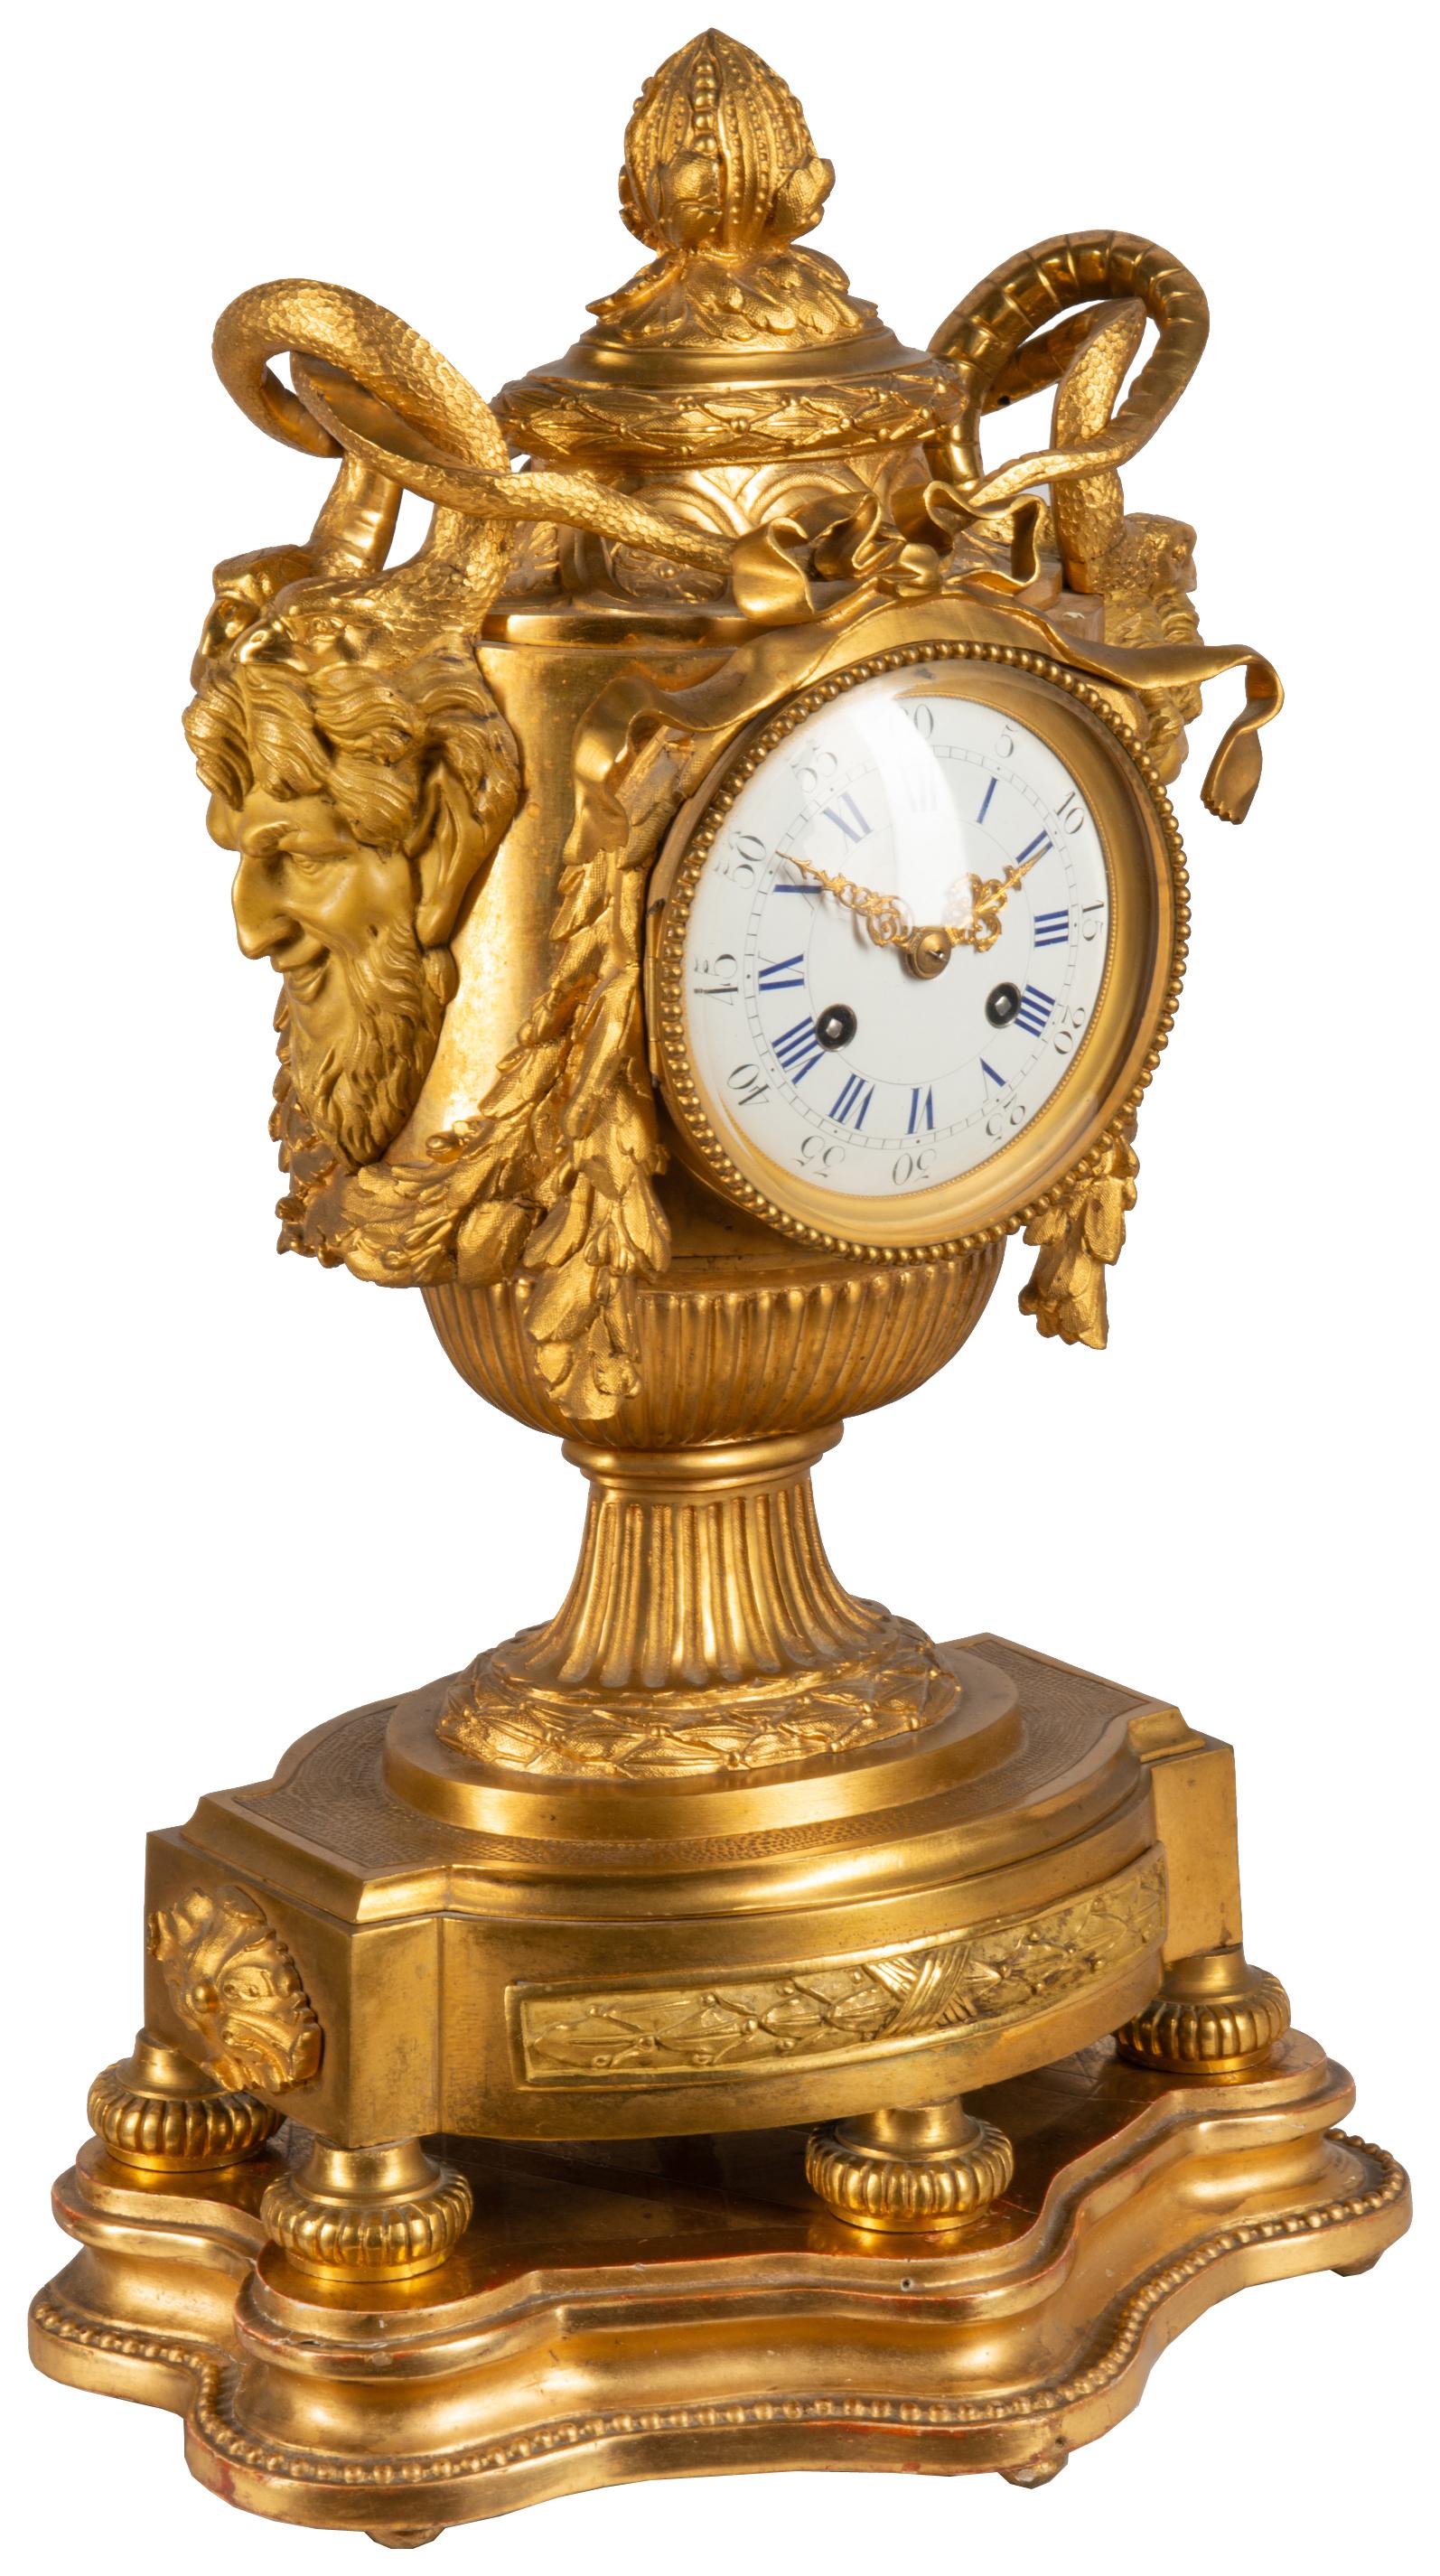 Eine sehr beeindruckende 19. Jahrhundert Französisch vergoldet Ormolu Medusa beeinflusst Urne Mantel Uhr. Mit bärtigen Masken auf beiden Seiten mit Schlangen über Blattranken um das Zifferblatt aus weißem Email. Das Uhrwerk hat eine Laufzeit von